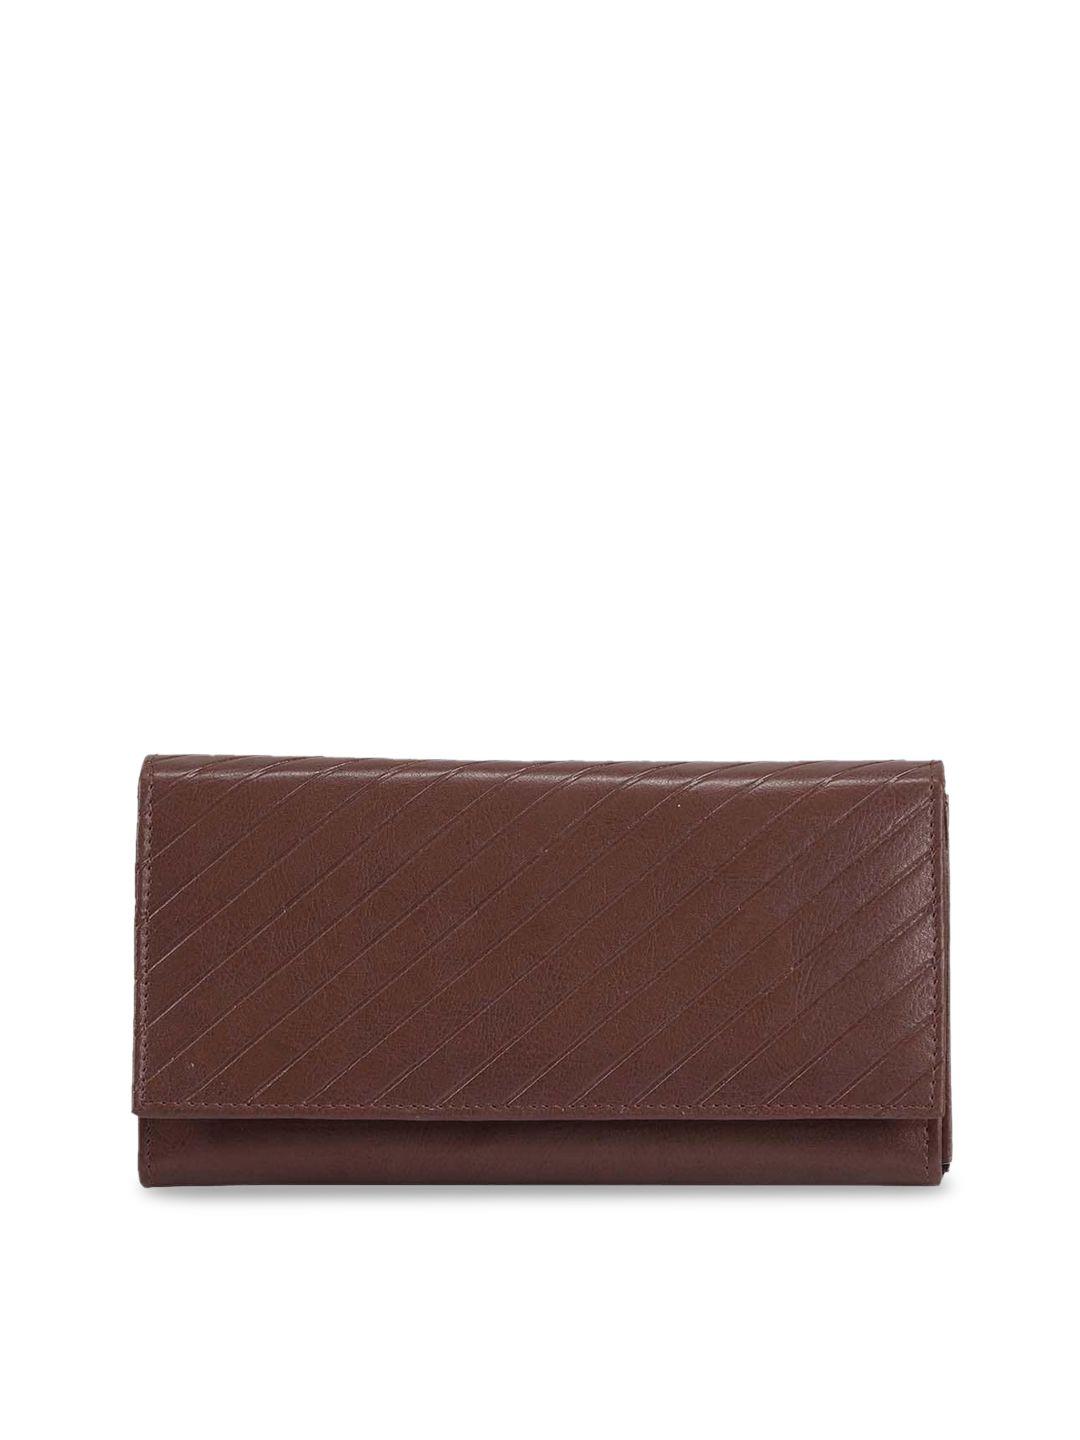 abeeza brown textured purse clutch